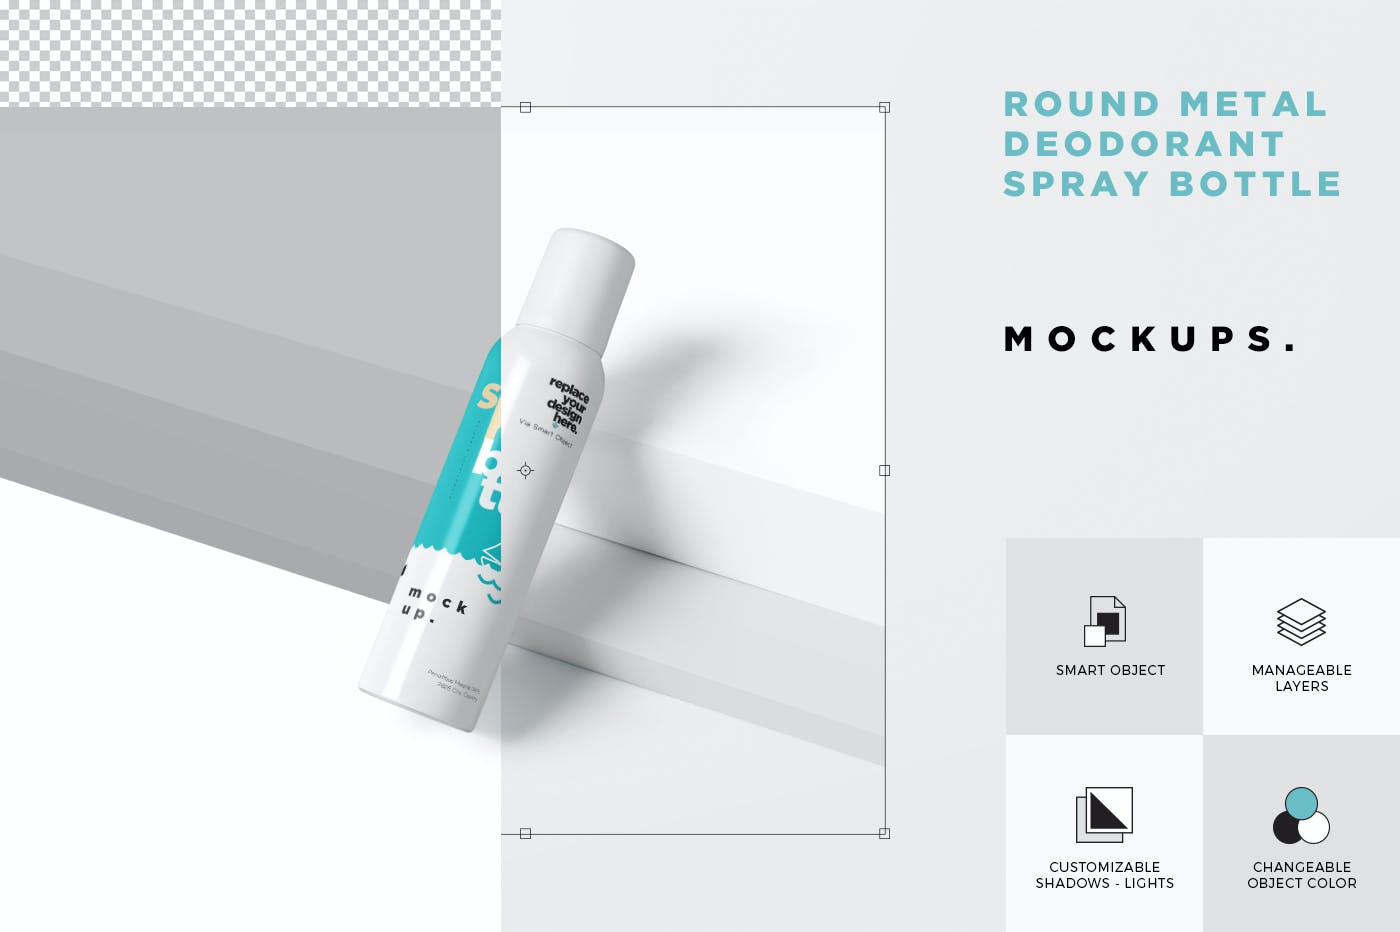 金属材质除臭喷雾瓶包装设计样机 Metal Deodorant Spray Bottle Mockups设计素材模板